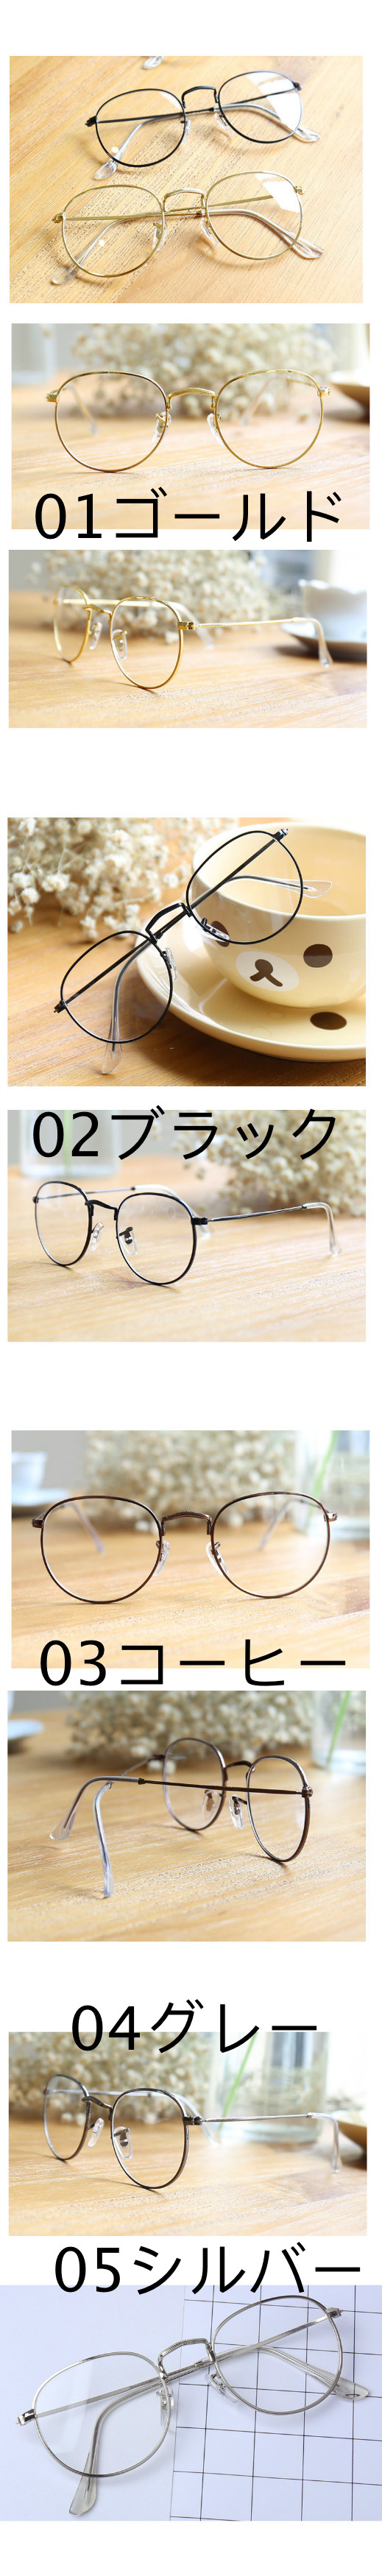 黒縁韓国おしゃれレトロメガネ大きめ流行りのメガネ